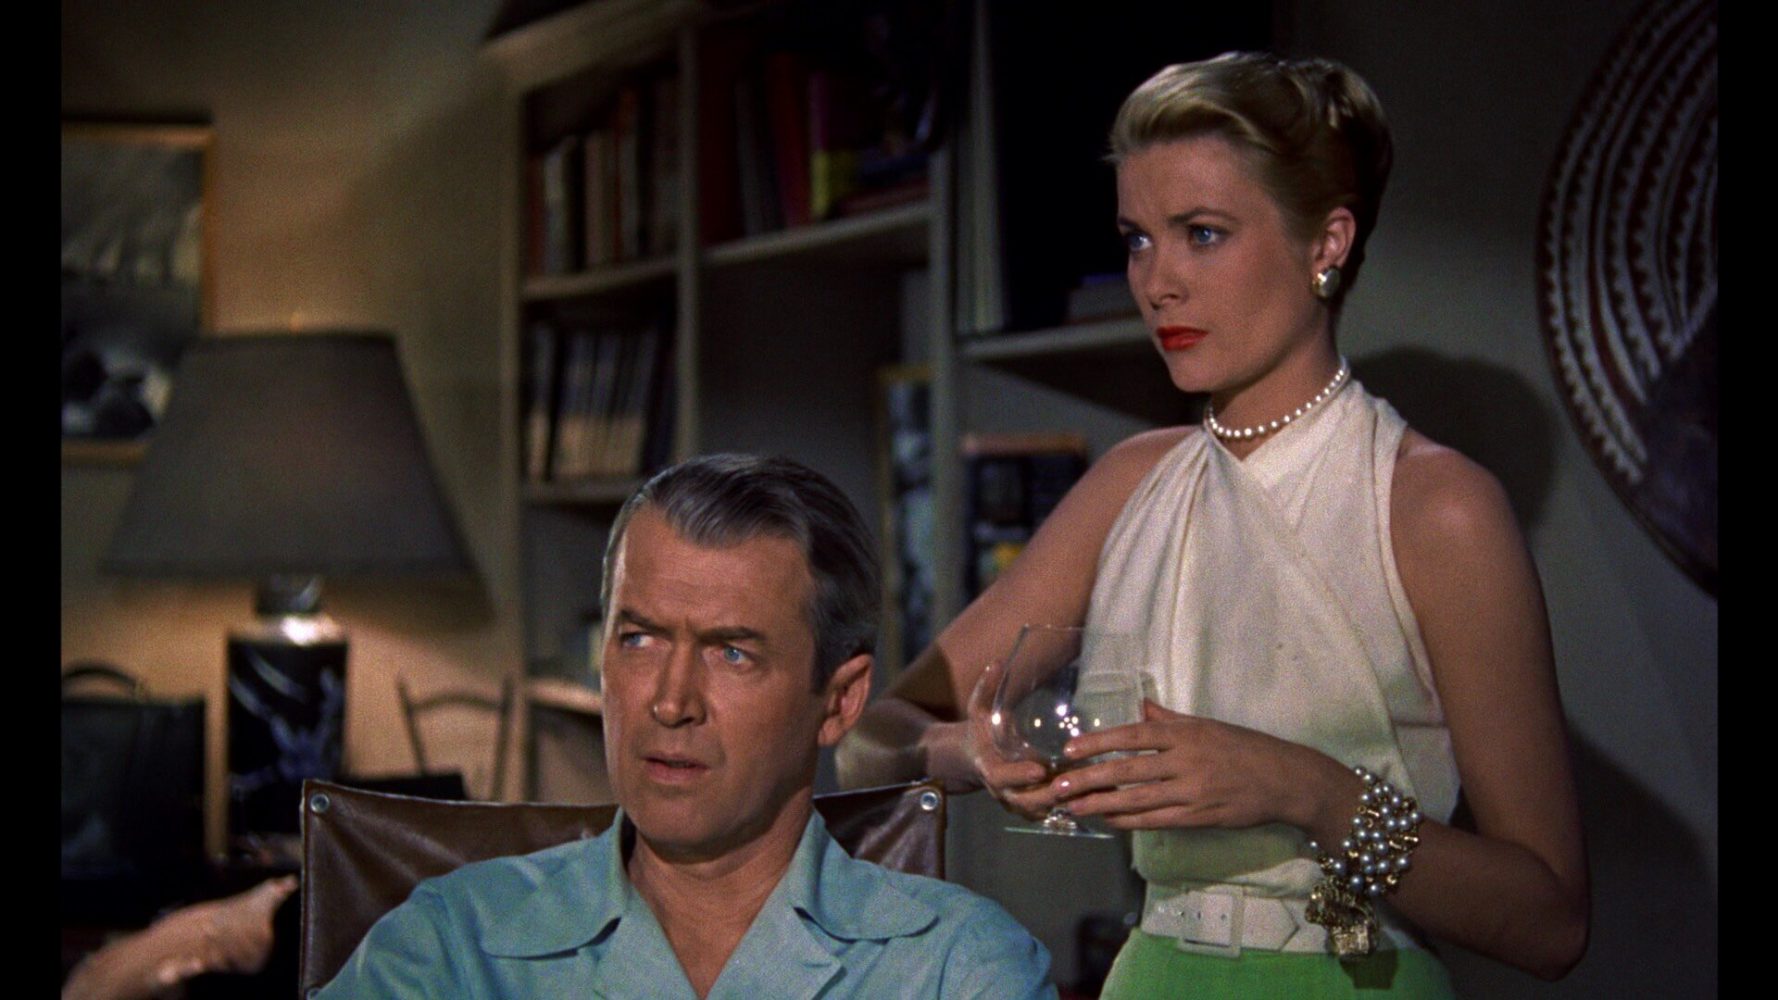 Phim hay nhất mọi thời đại: Vụ án mạng nhà bên - Rear window (1954)